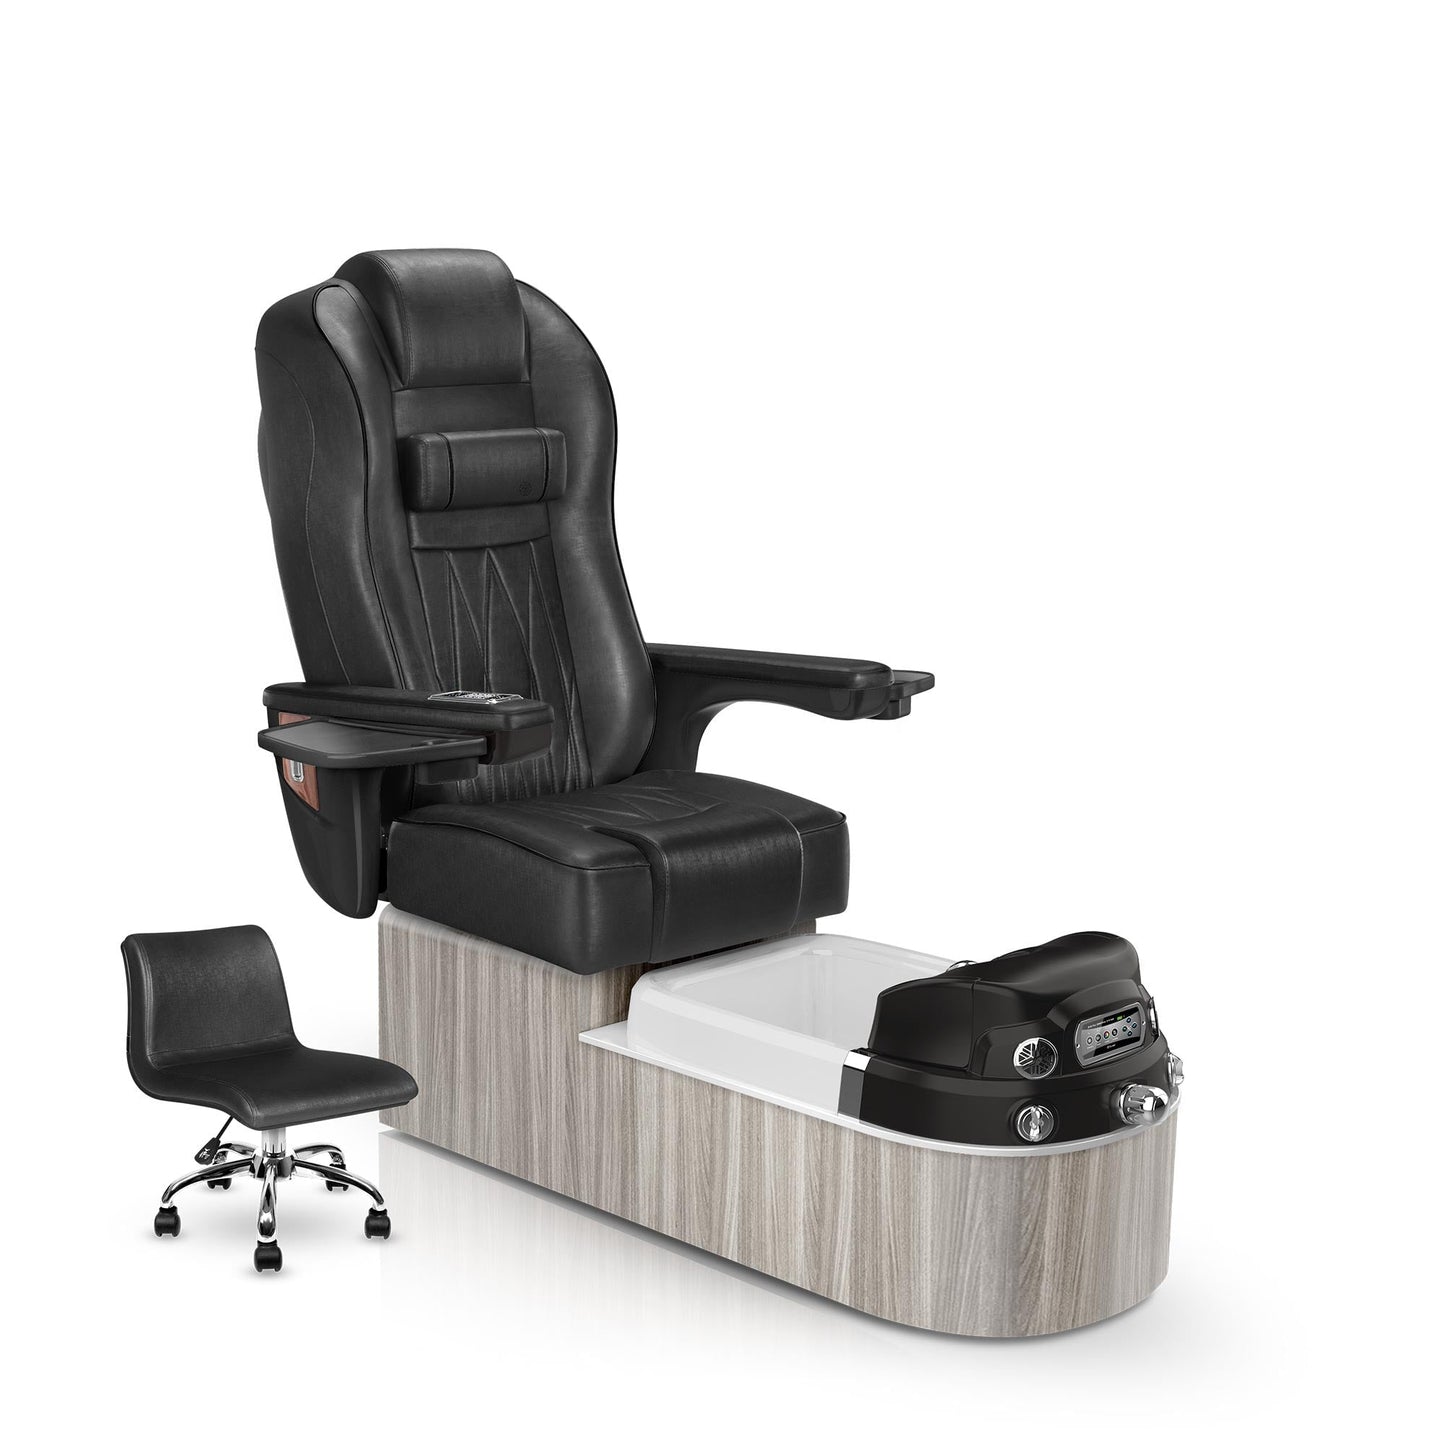 Lexor Envision pedicure chair noir cushion and hazel base